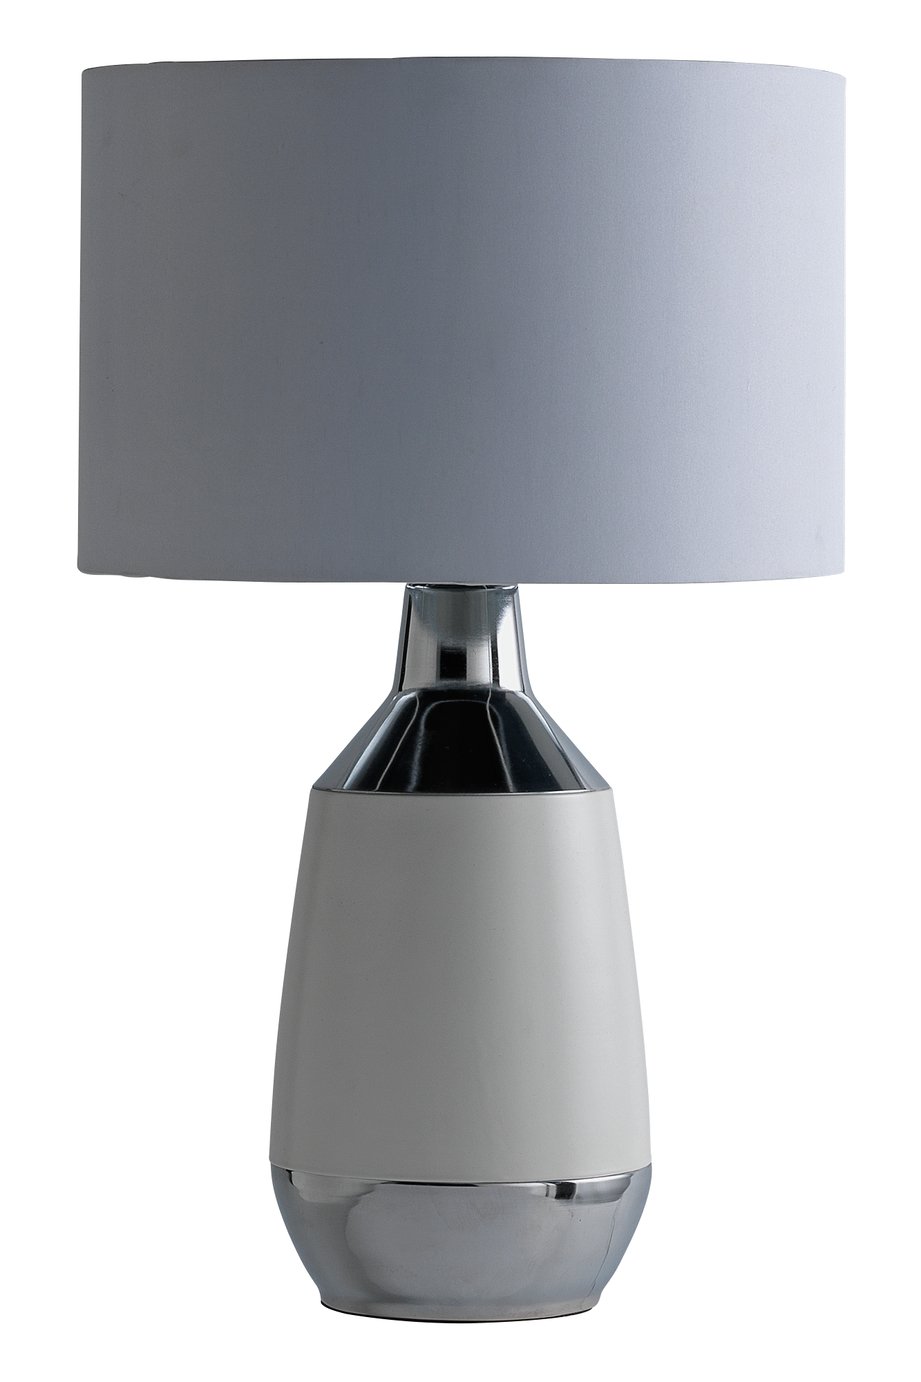 Argos Home Pluto Table Lamp - White & Chrome